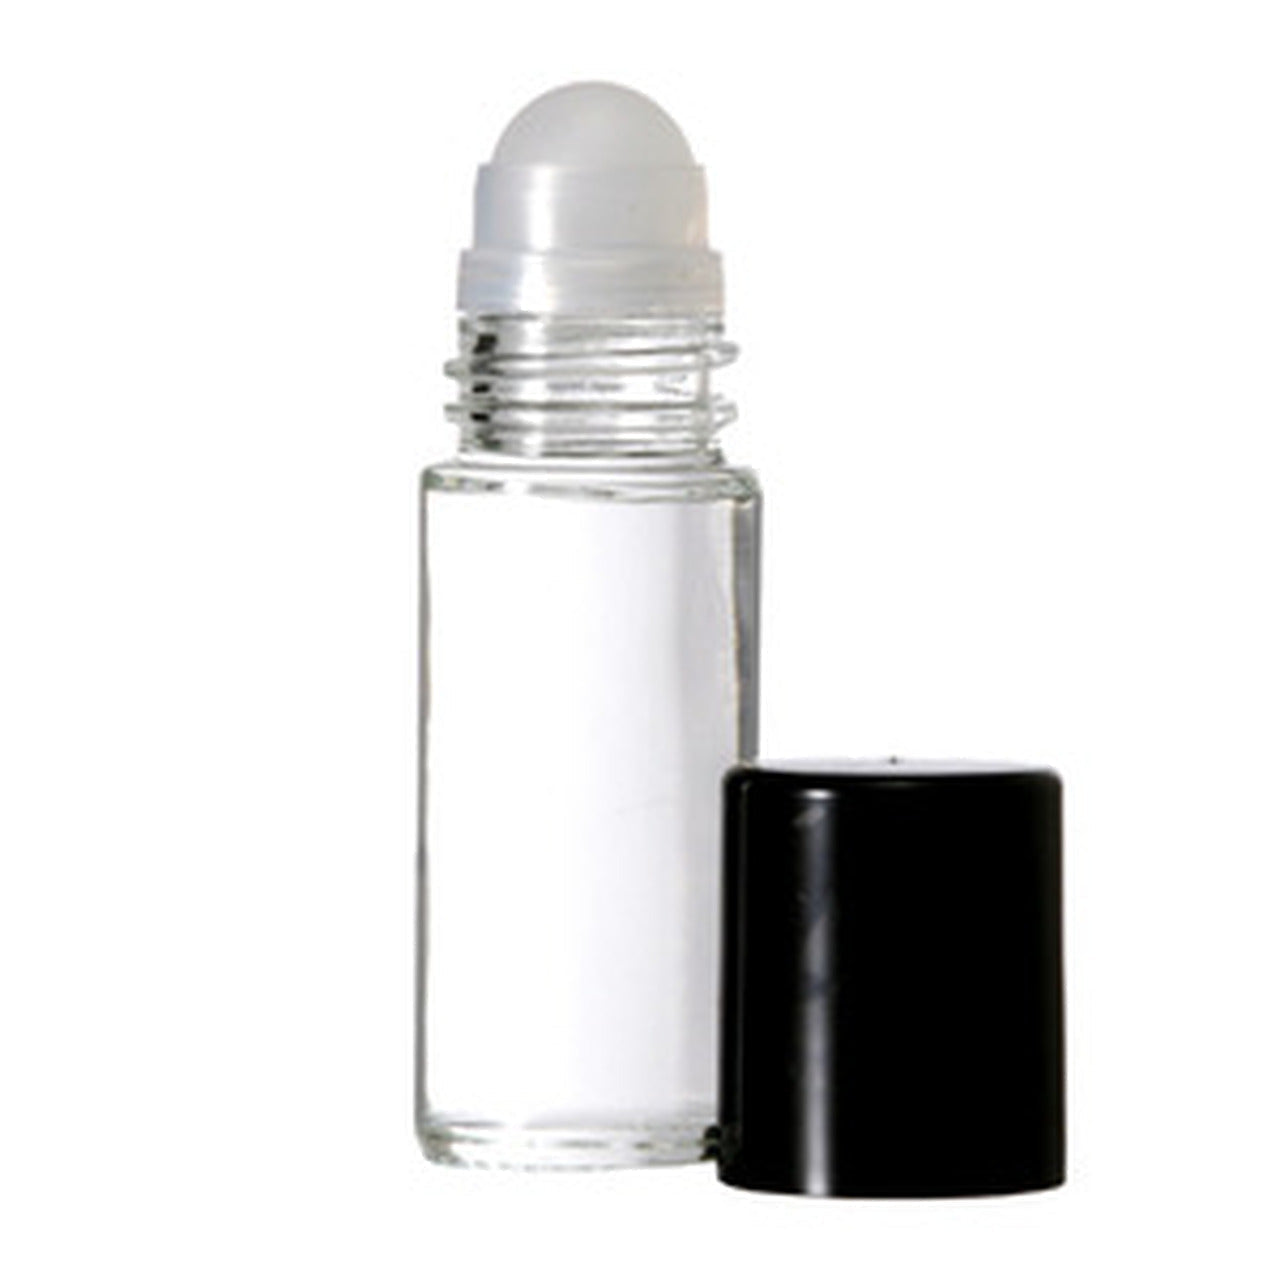 Dreamer - Our Version for Men - Premium Fragrance & Body Oil